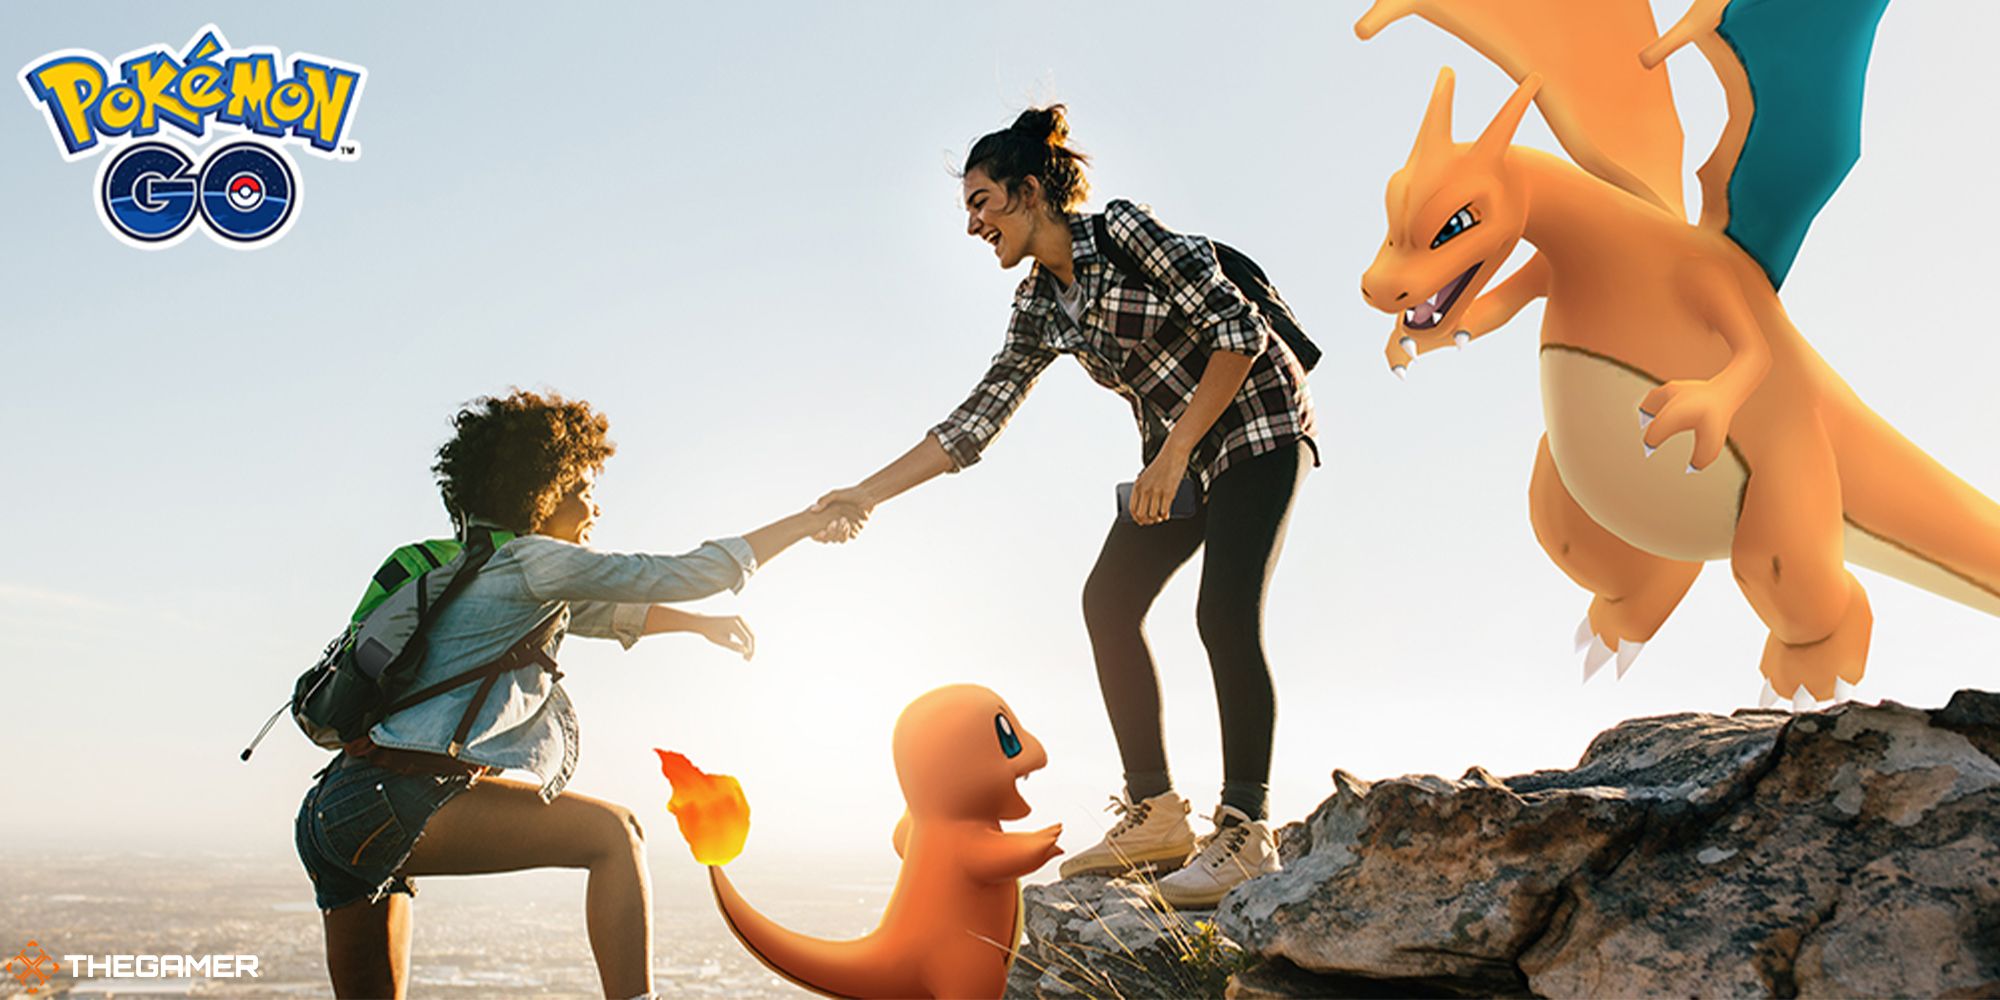 Pokemon Go — промо-изображение двух игроков и покемонов